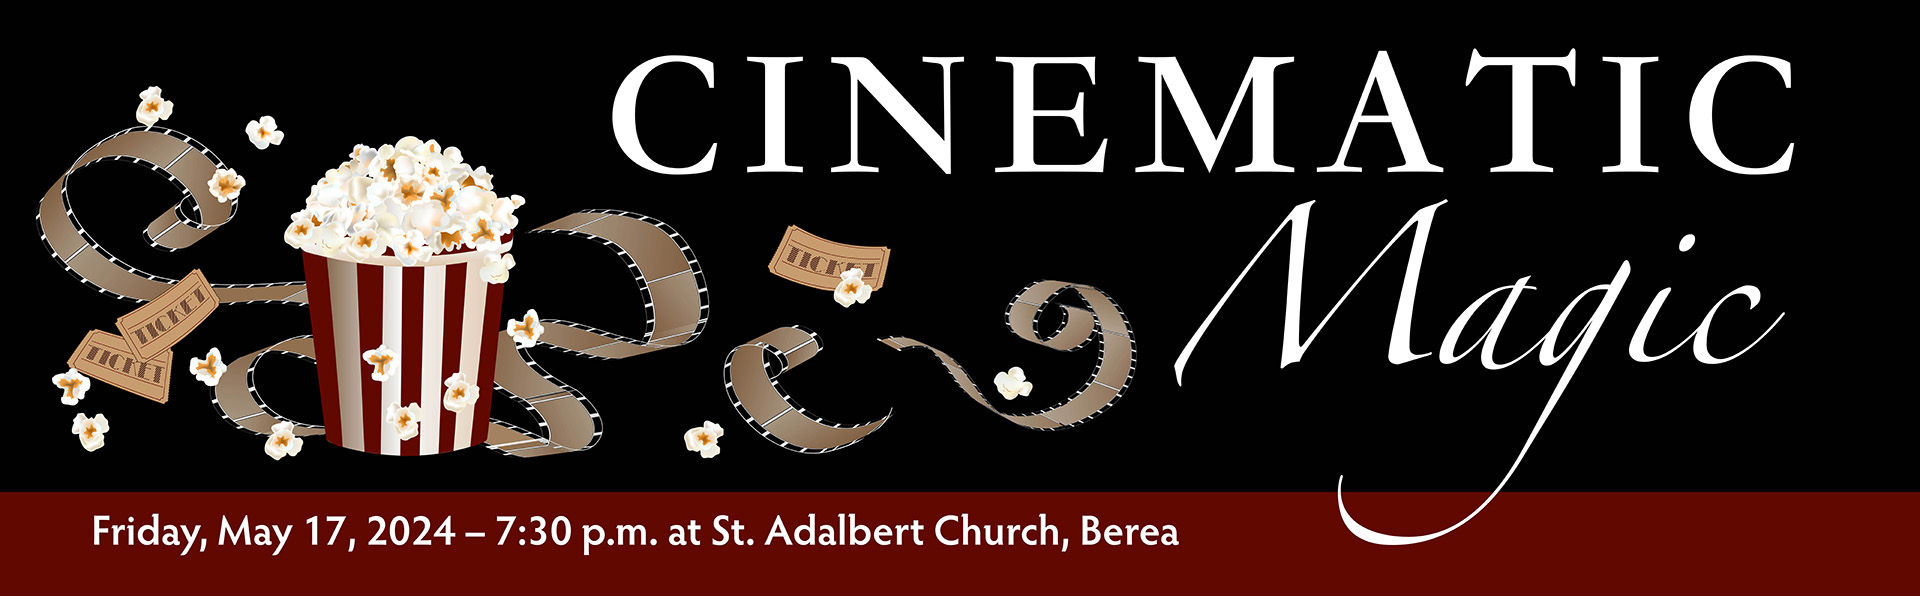 Cinematic Magic, Friday May 17 at 7:30 p.m. at Saint Adalbert Church in Berea Ohio